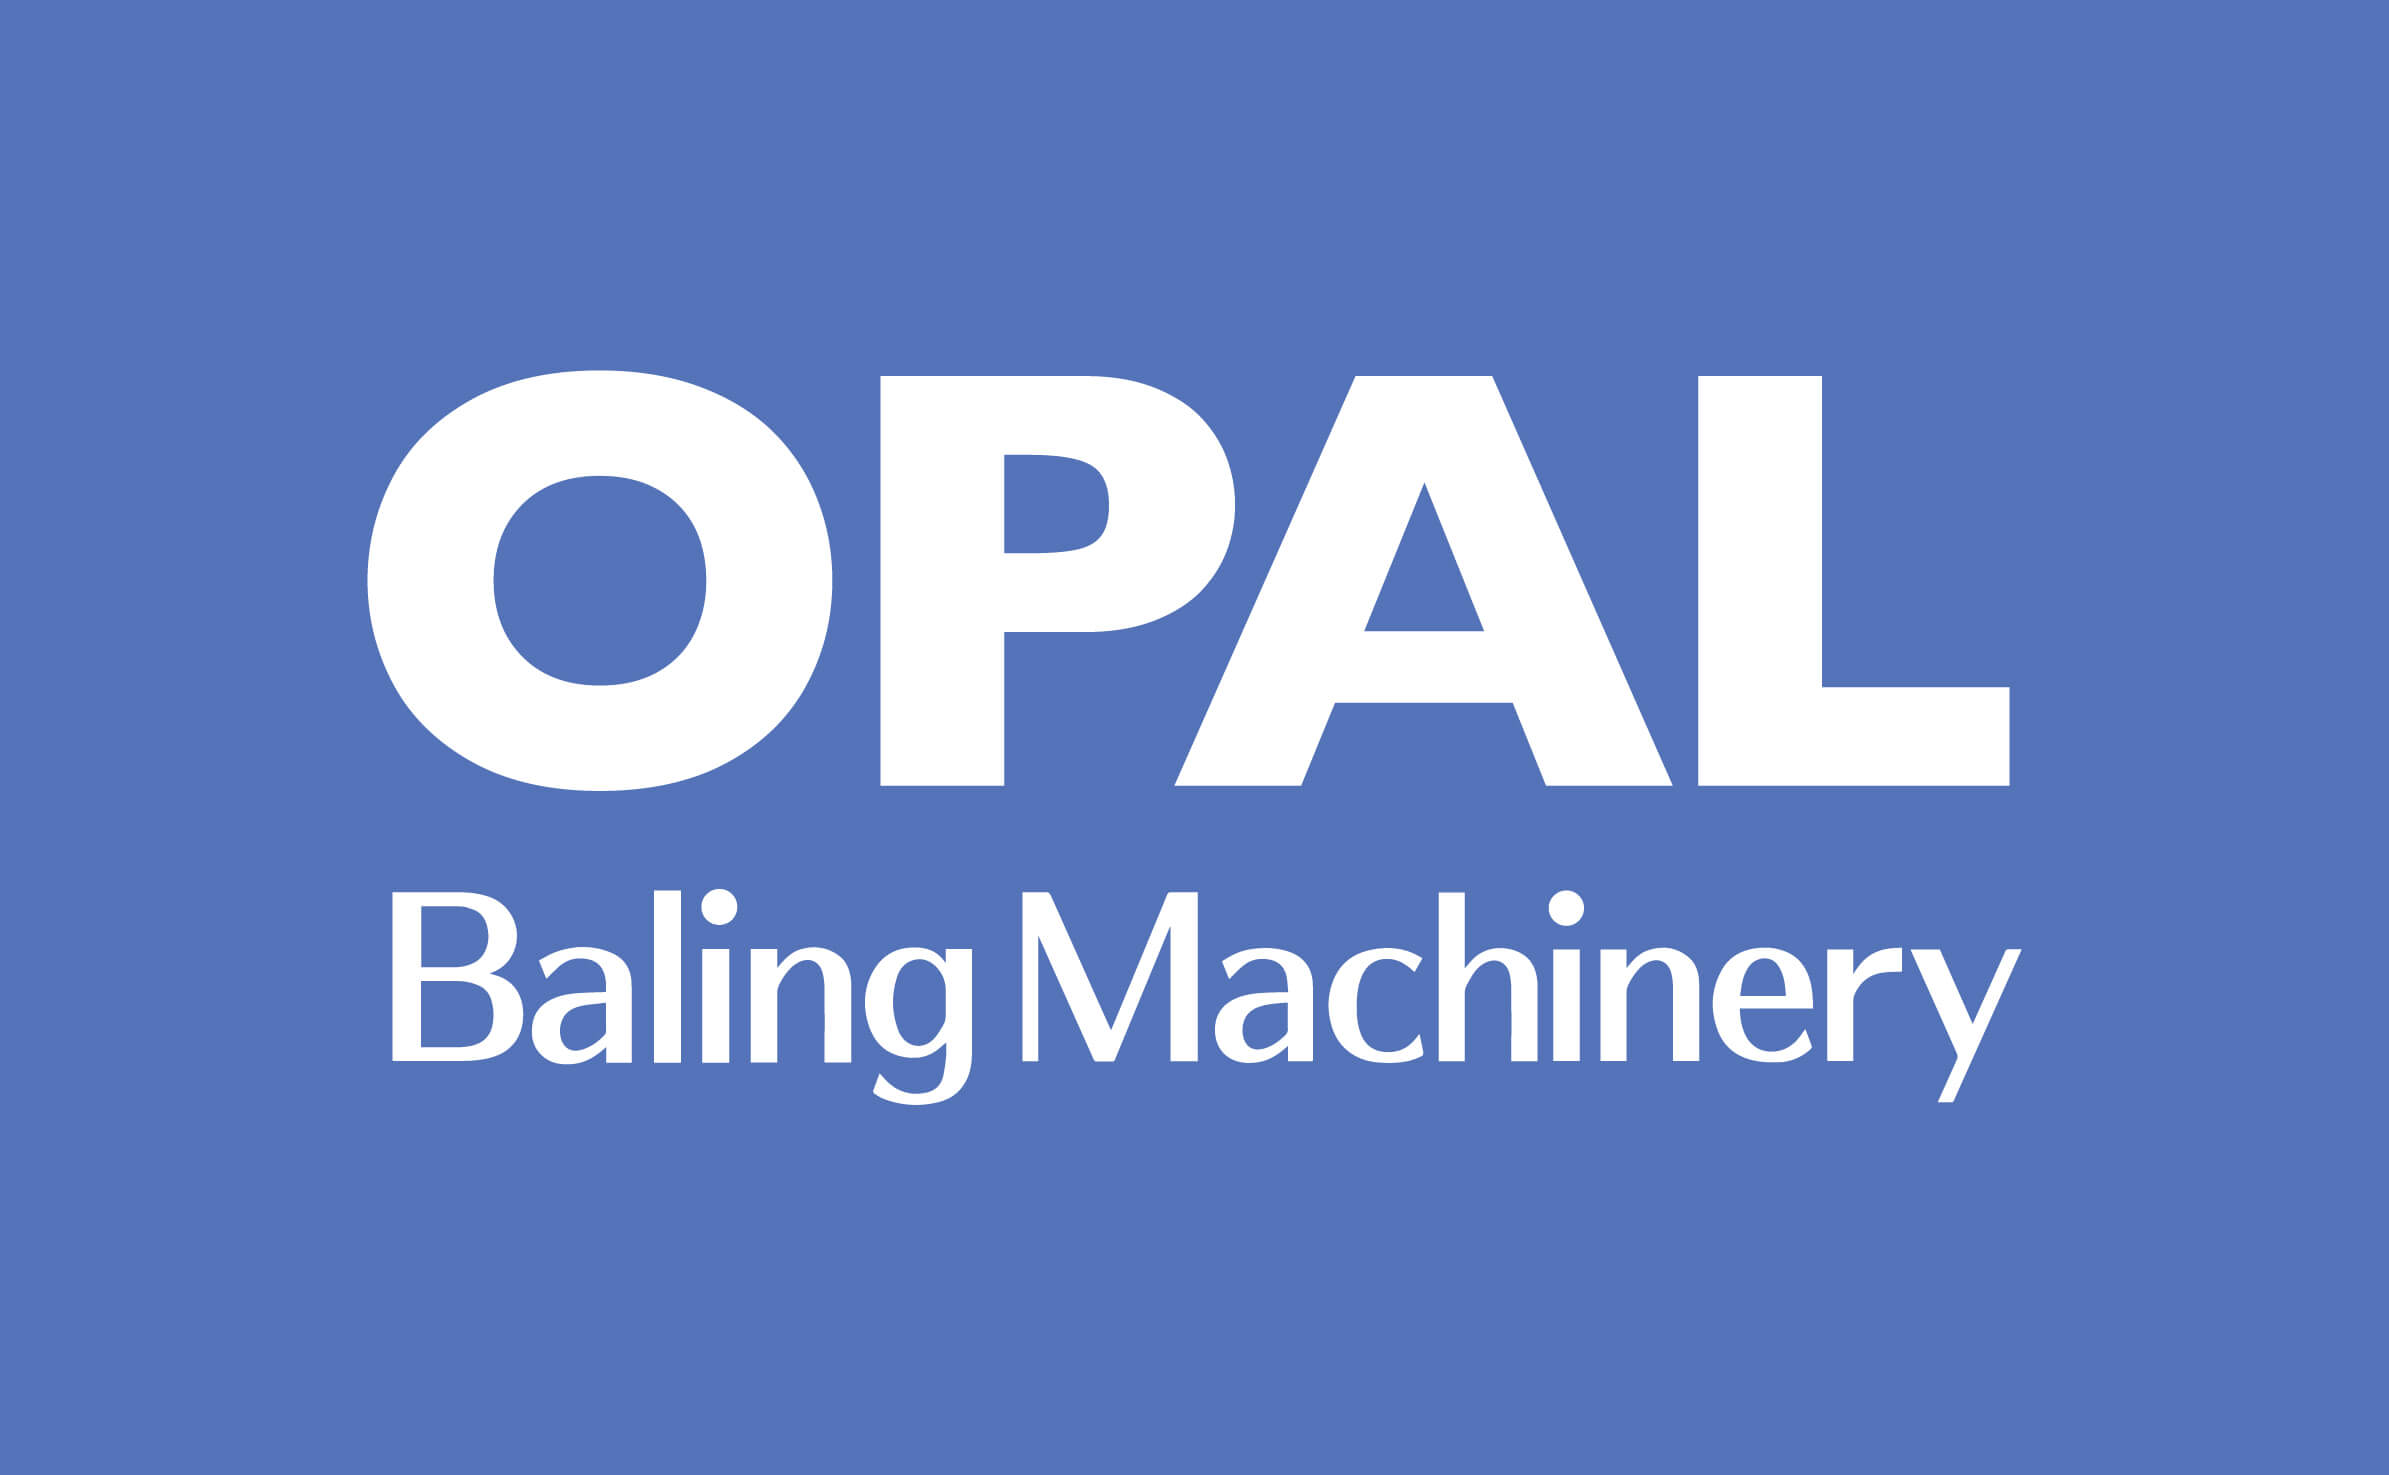 Opal Baling Machinery